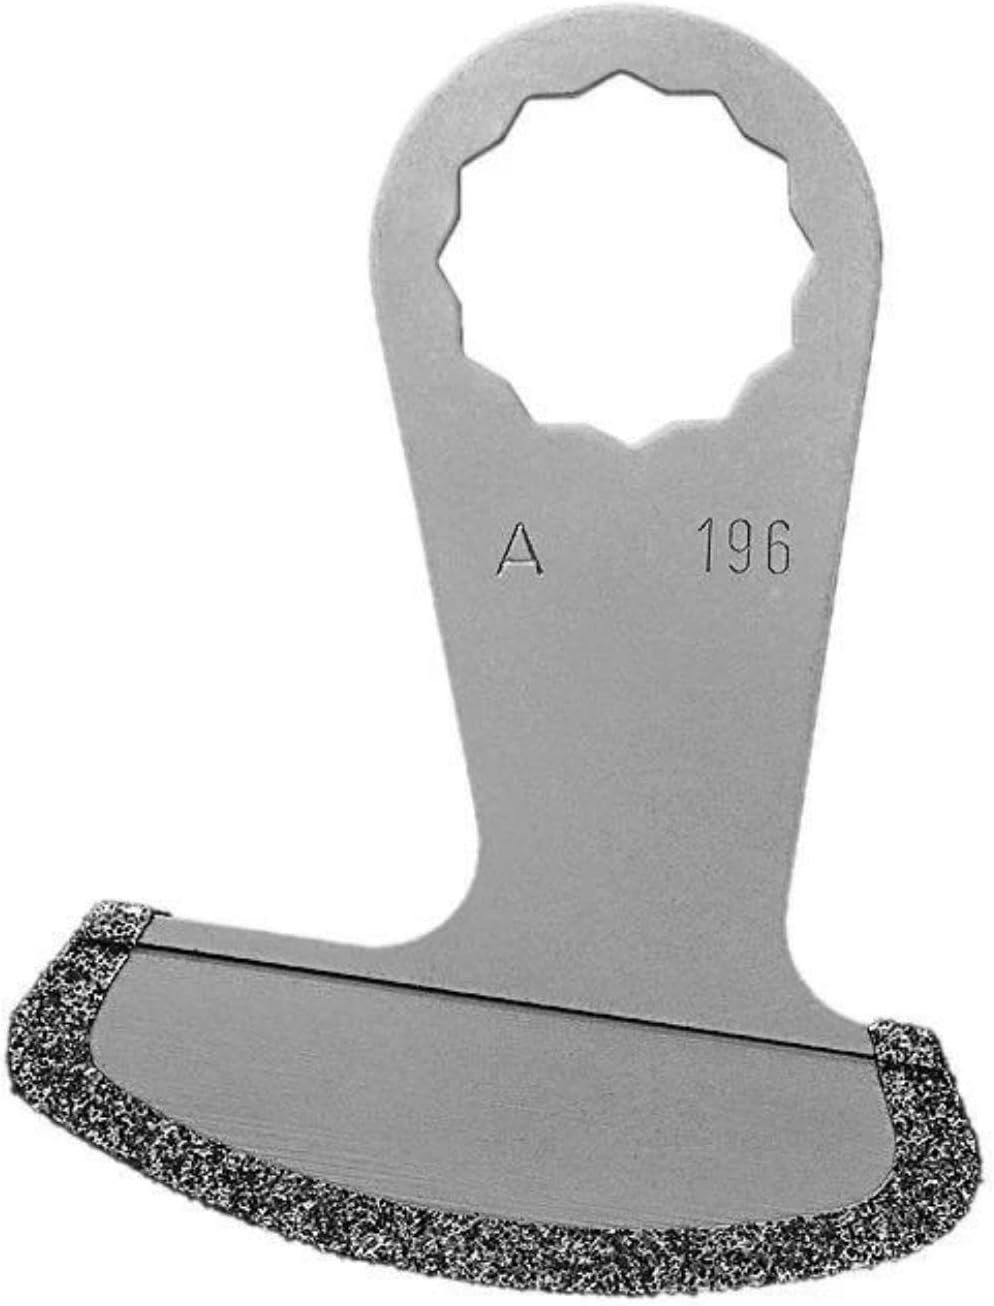 Fein Universalschneide-Aufsatz Messer Schnittstärke 1,2mm für dünne Marmorfugen